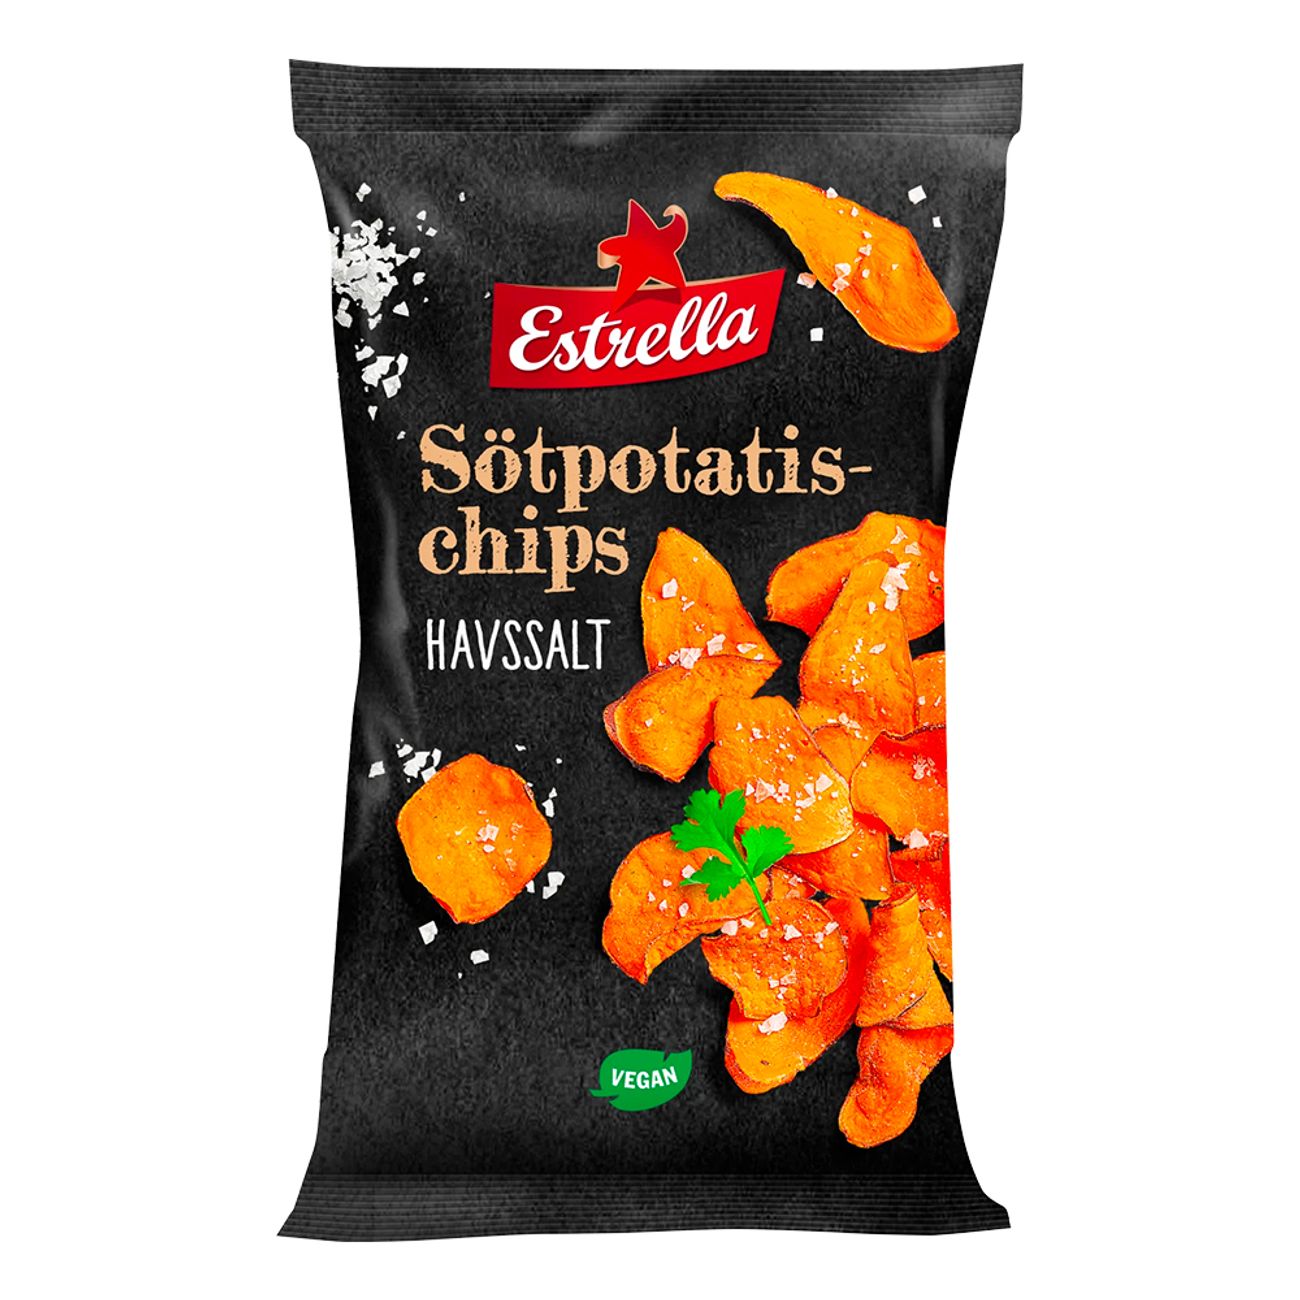 estrella-sotpotatischips-havssalt-82518-1